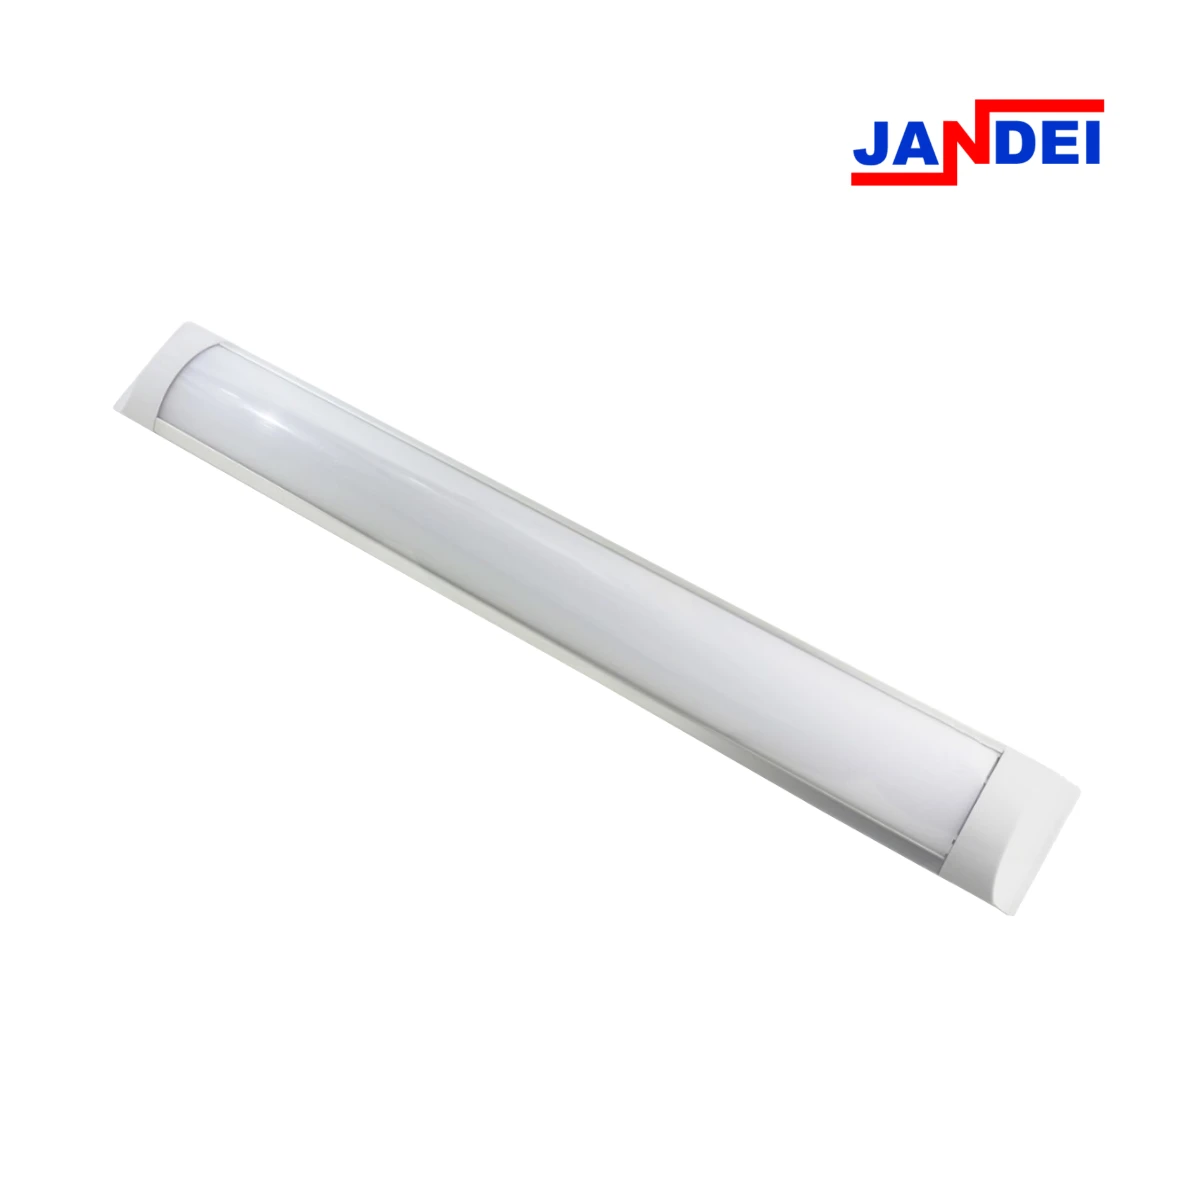 Jandei LED tube 120cm 36W, fluorescent LED strip, led ceiling light, led kitchen tube, workshop garage light, led tube luminaire